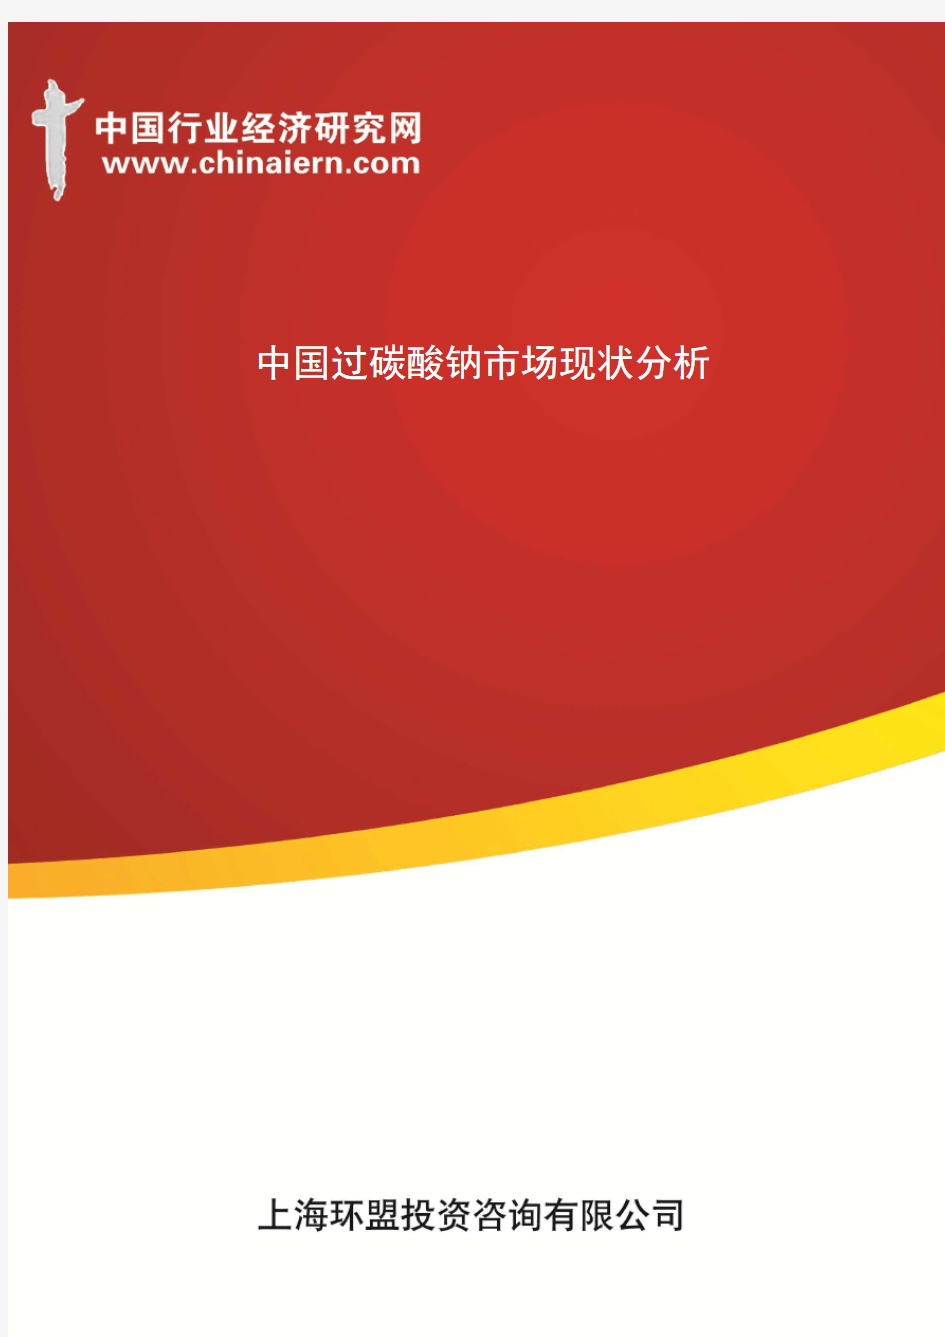 中国过碳酸钠市场现状分析(上海环盟)